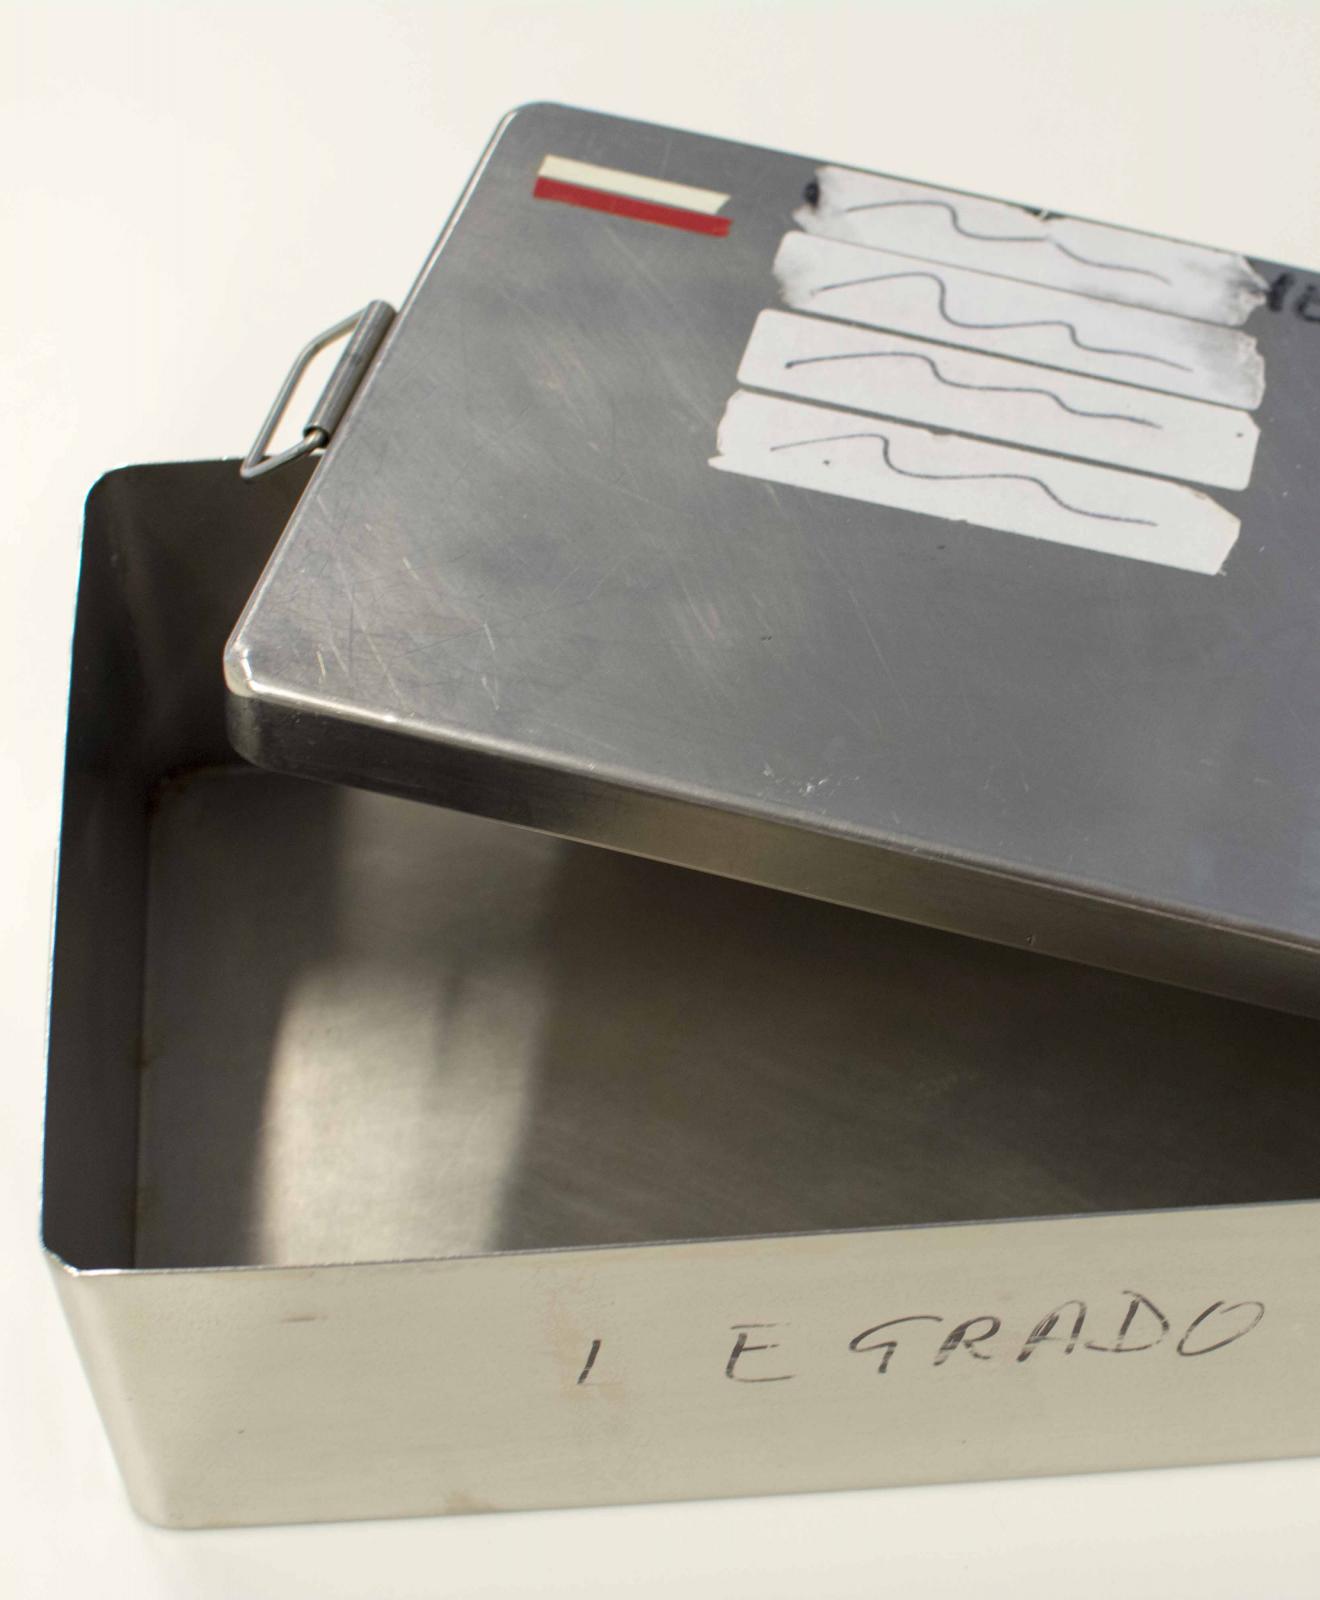 Caja metálica rectangular con asas móviles en los laterales de la tapadera a presión